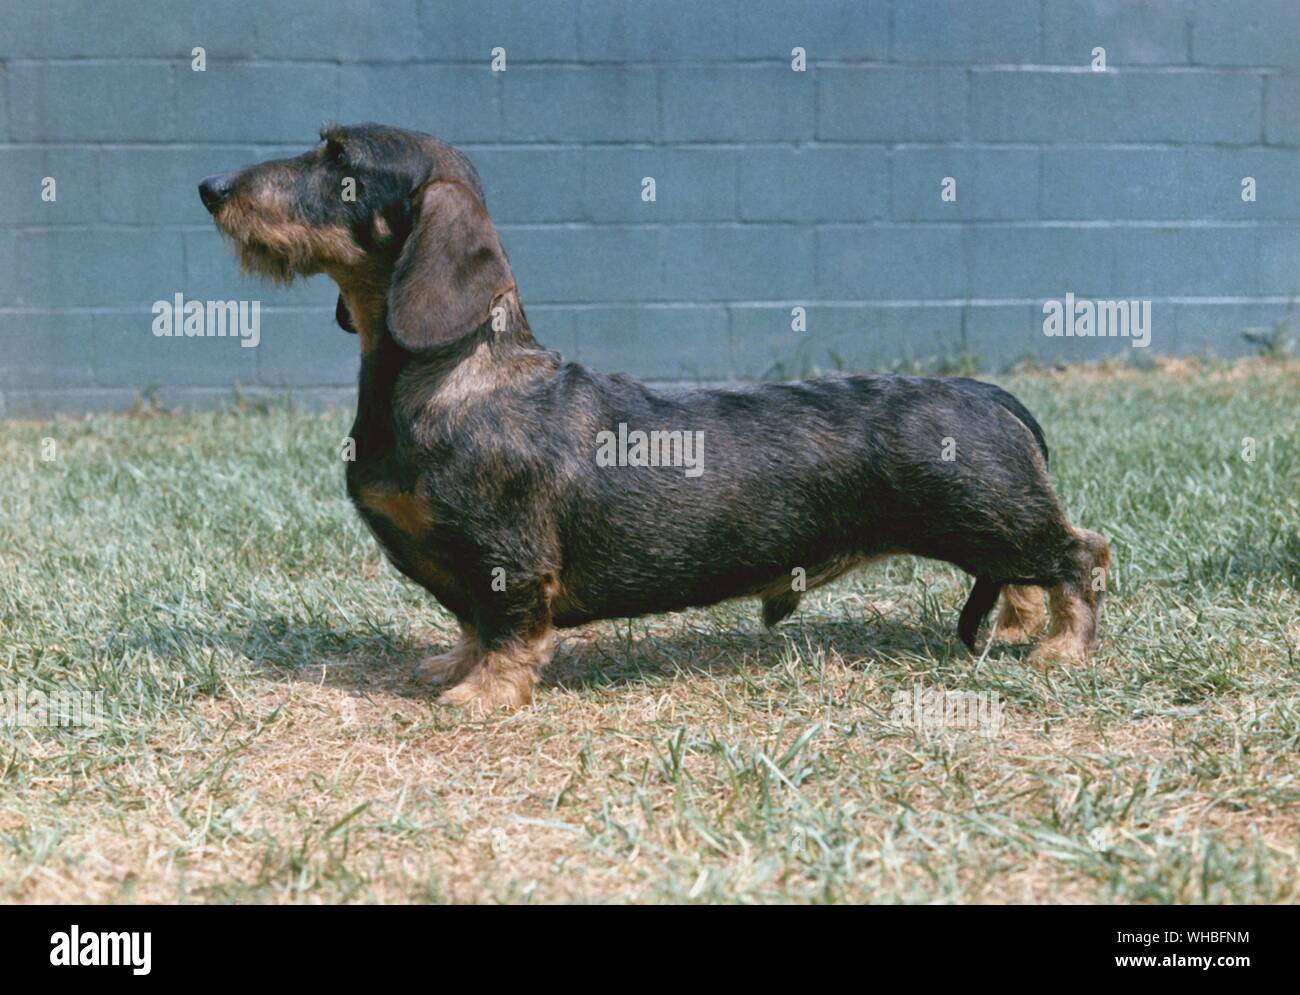 Sur le fil est un teckel poil de courtes pattes allongées, de race de chien le chien de la famille. CH. Le Shillalah Westphal Banque D'Images